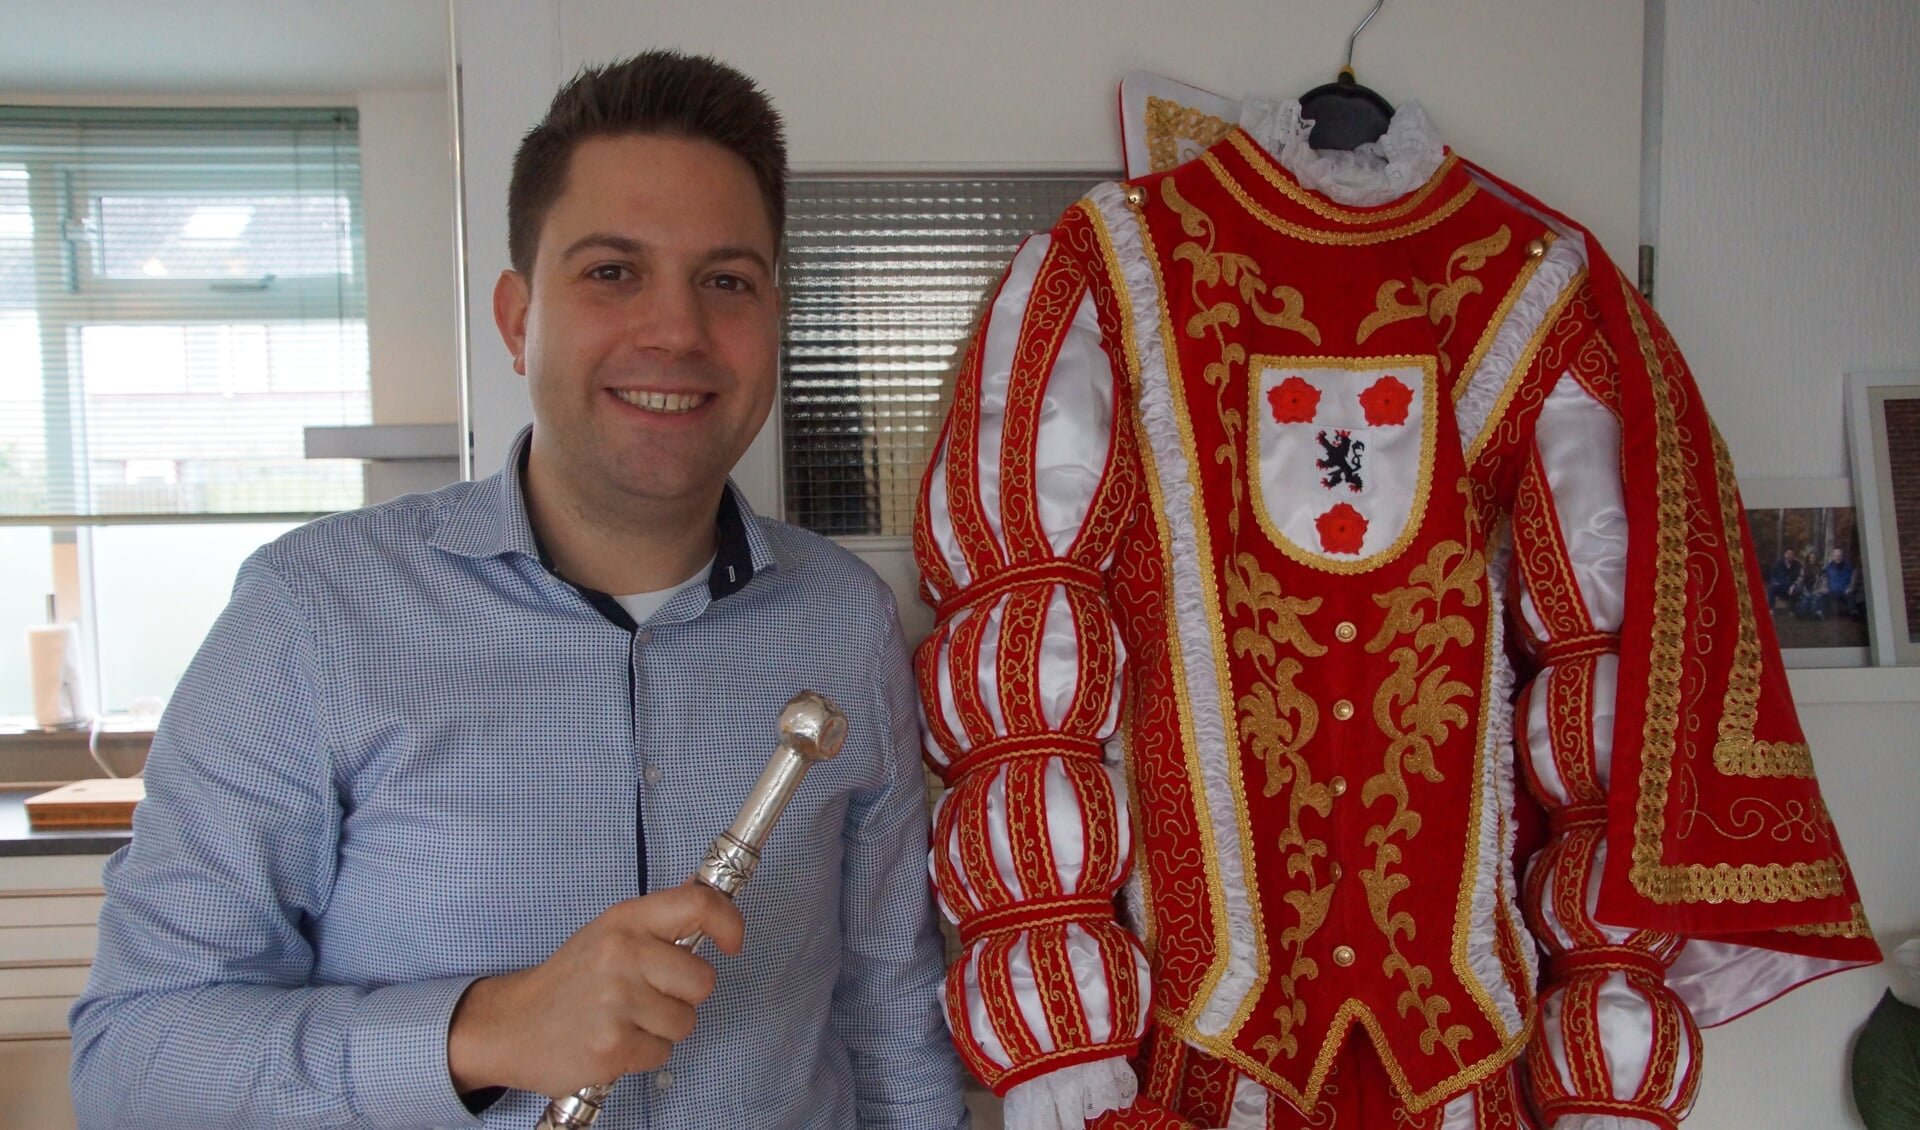 De nieuwe Oogeid van Tullepetaonestad, Prins Markus I, met het pak dat hij tijdens de Priense Swaree voor het eerst zal dragen.